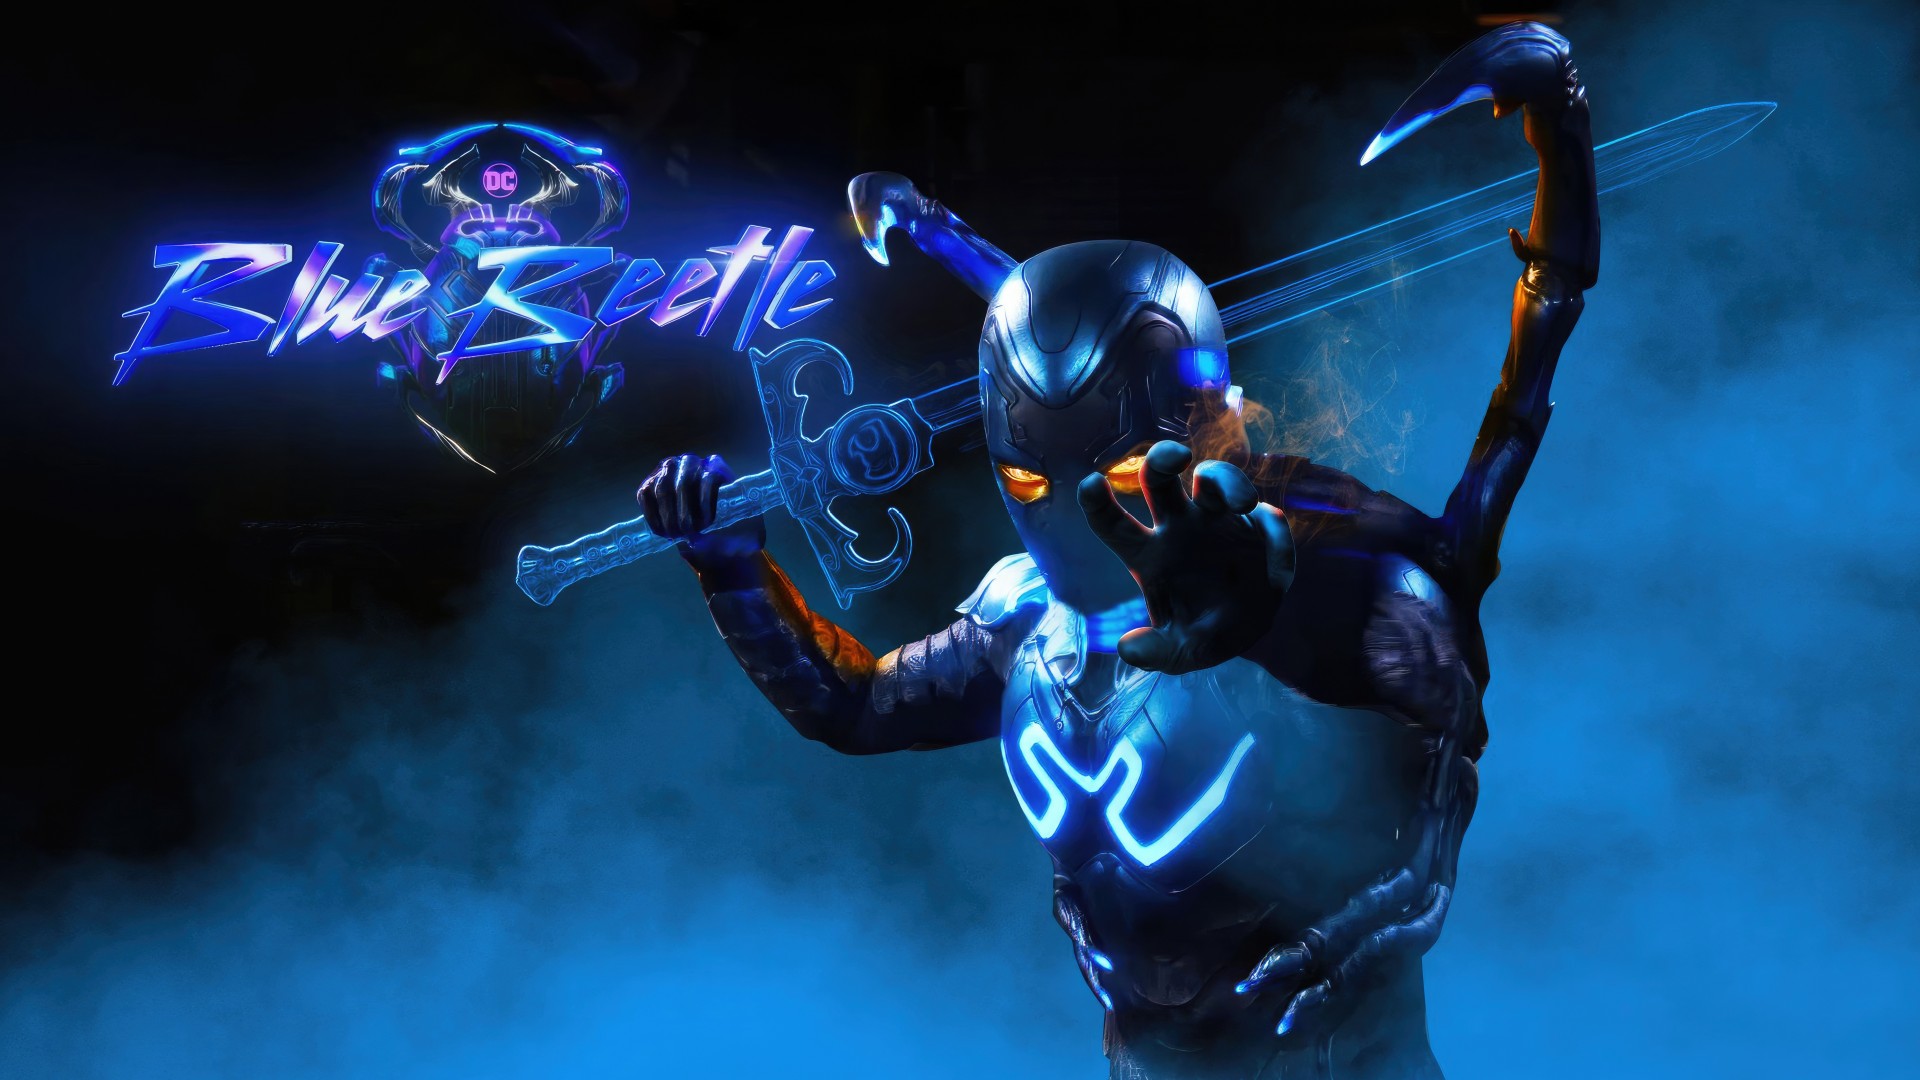 Tajemnicze "hasło" w filmie Blue Beetle wskazuje na członka Justice League